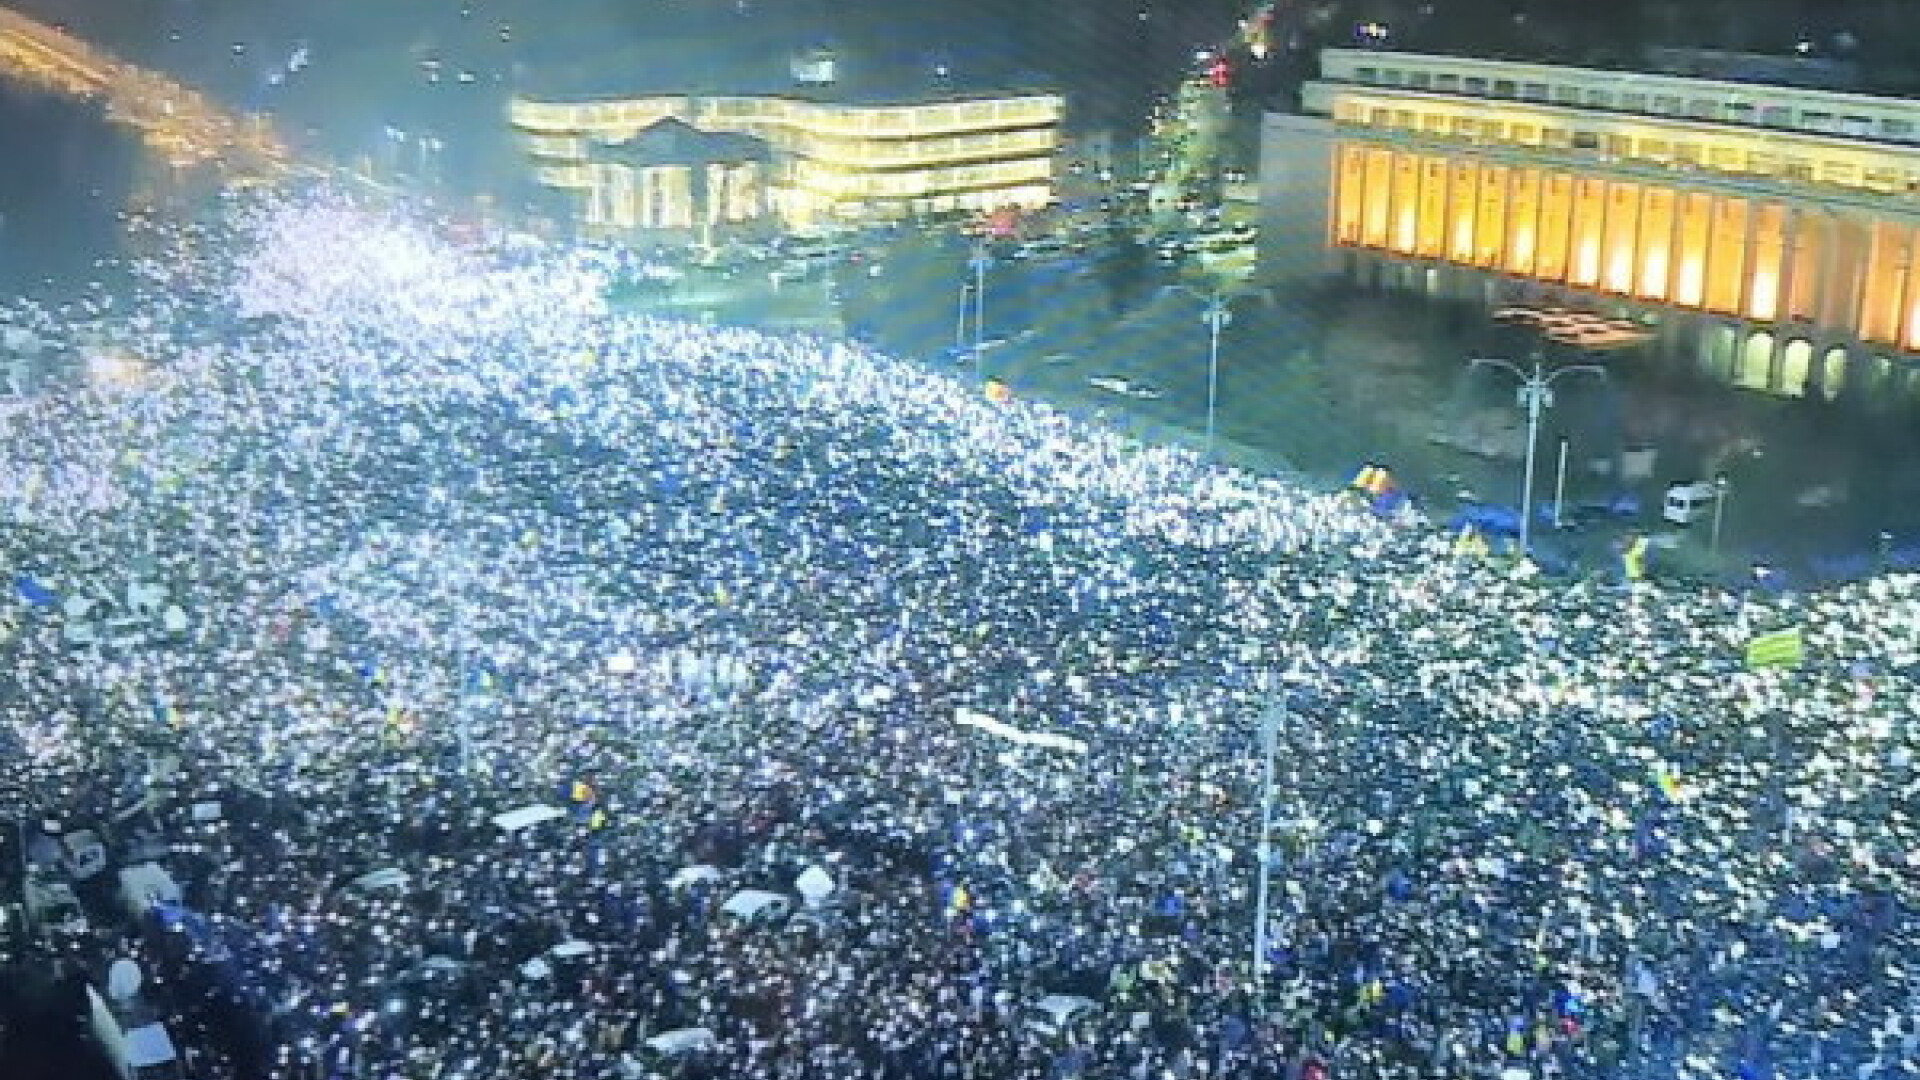 Moment istoric in Romania. 280.000 de romani oameni au luminat Piata Victoriei